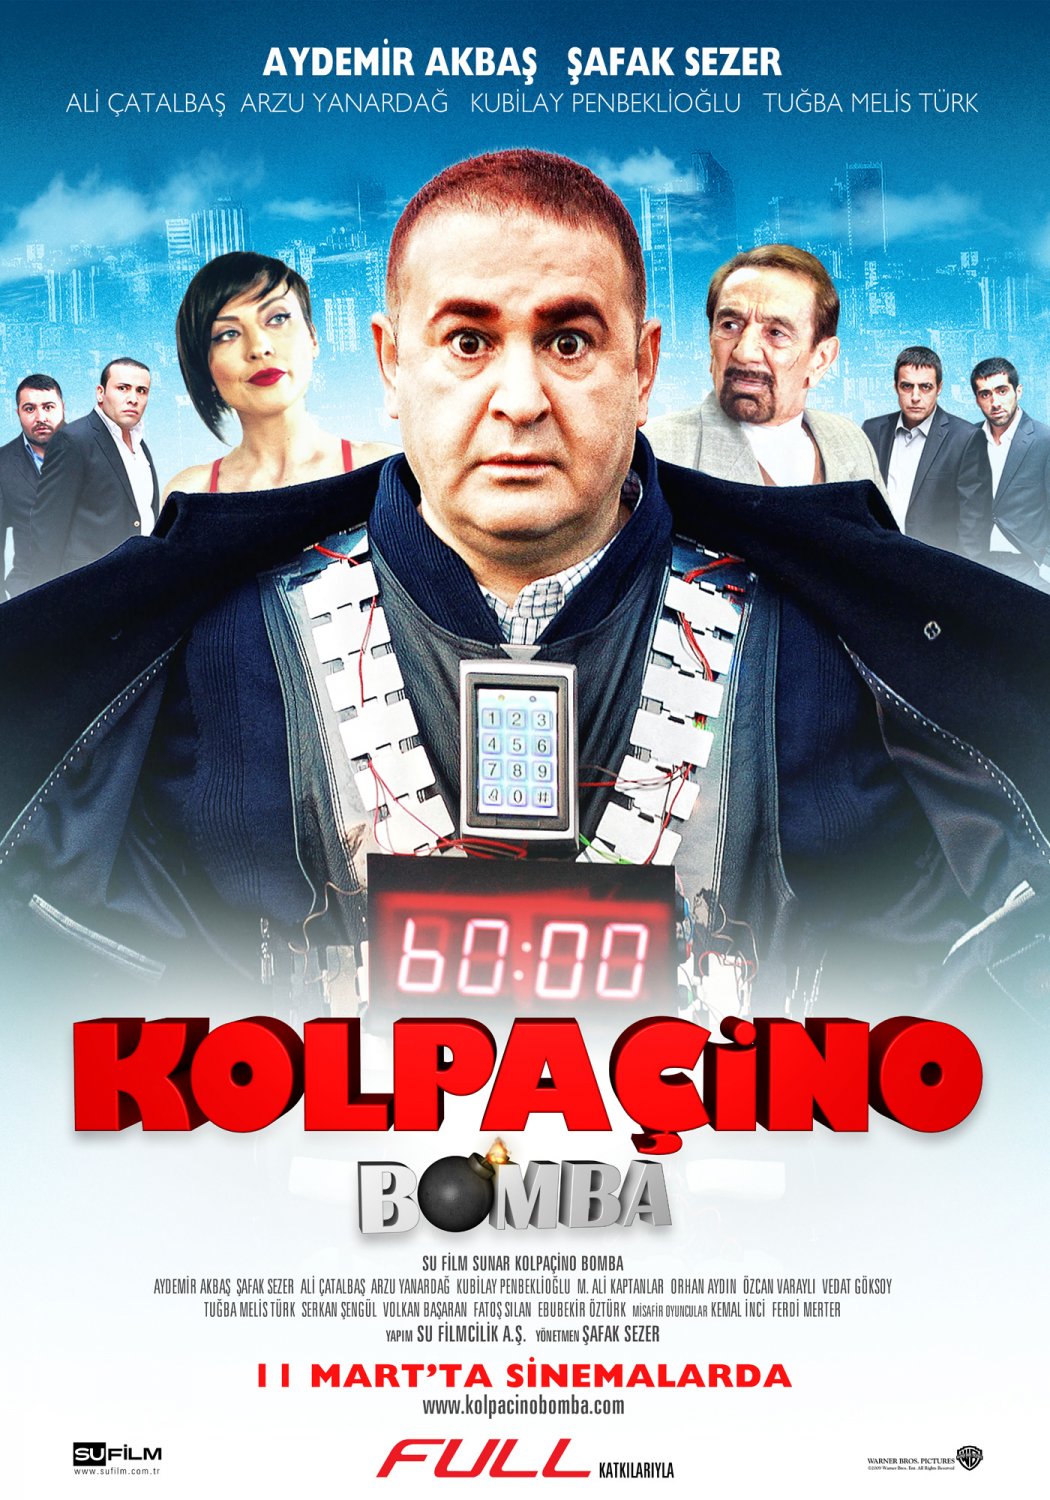 Kolpacino: Bomba movie